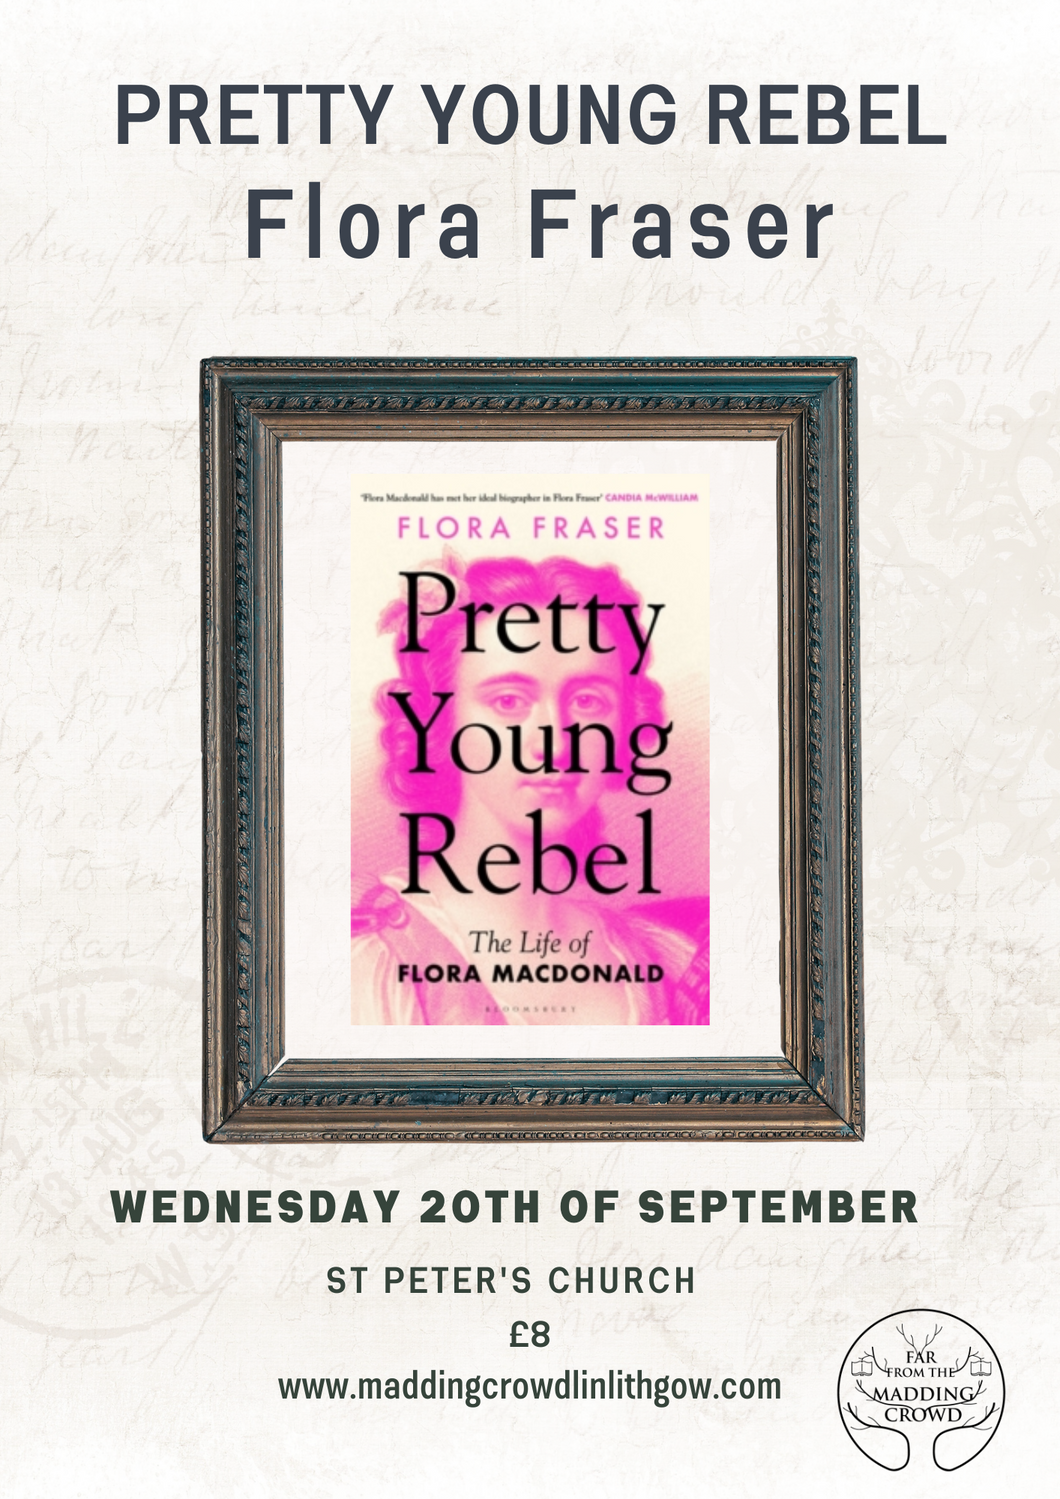 Author Talk: Flora Fraser, Wednesday 20th September, 7pm